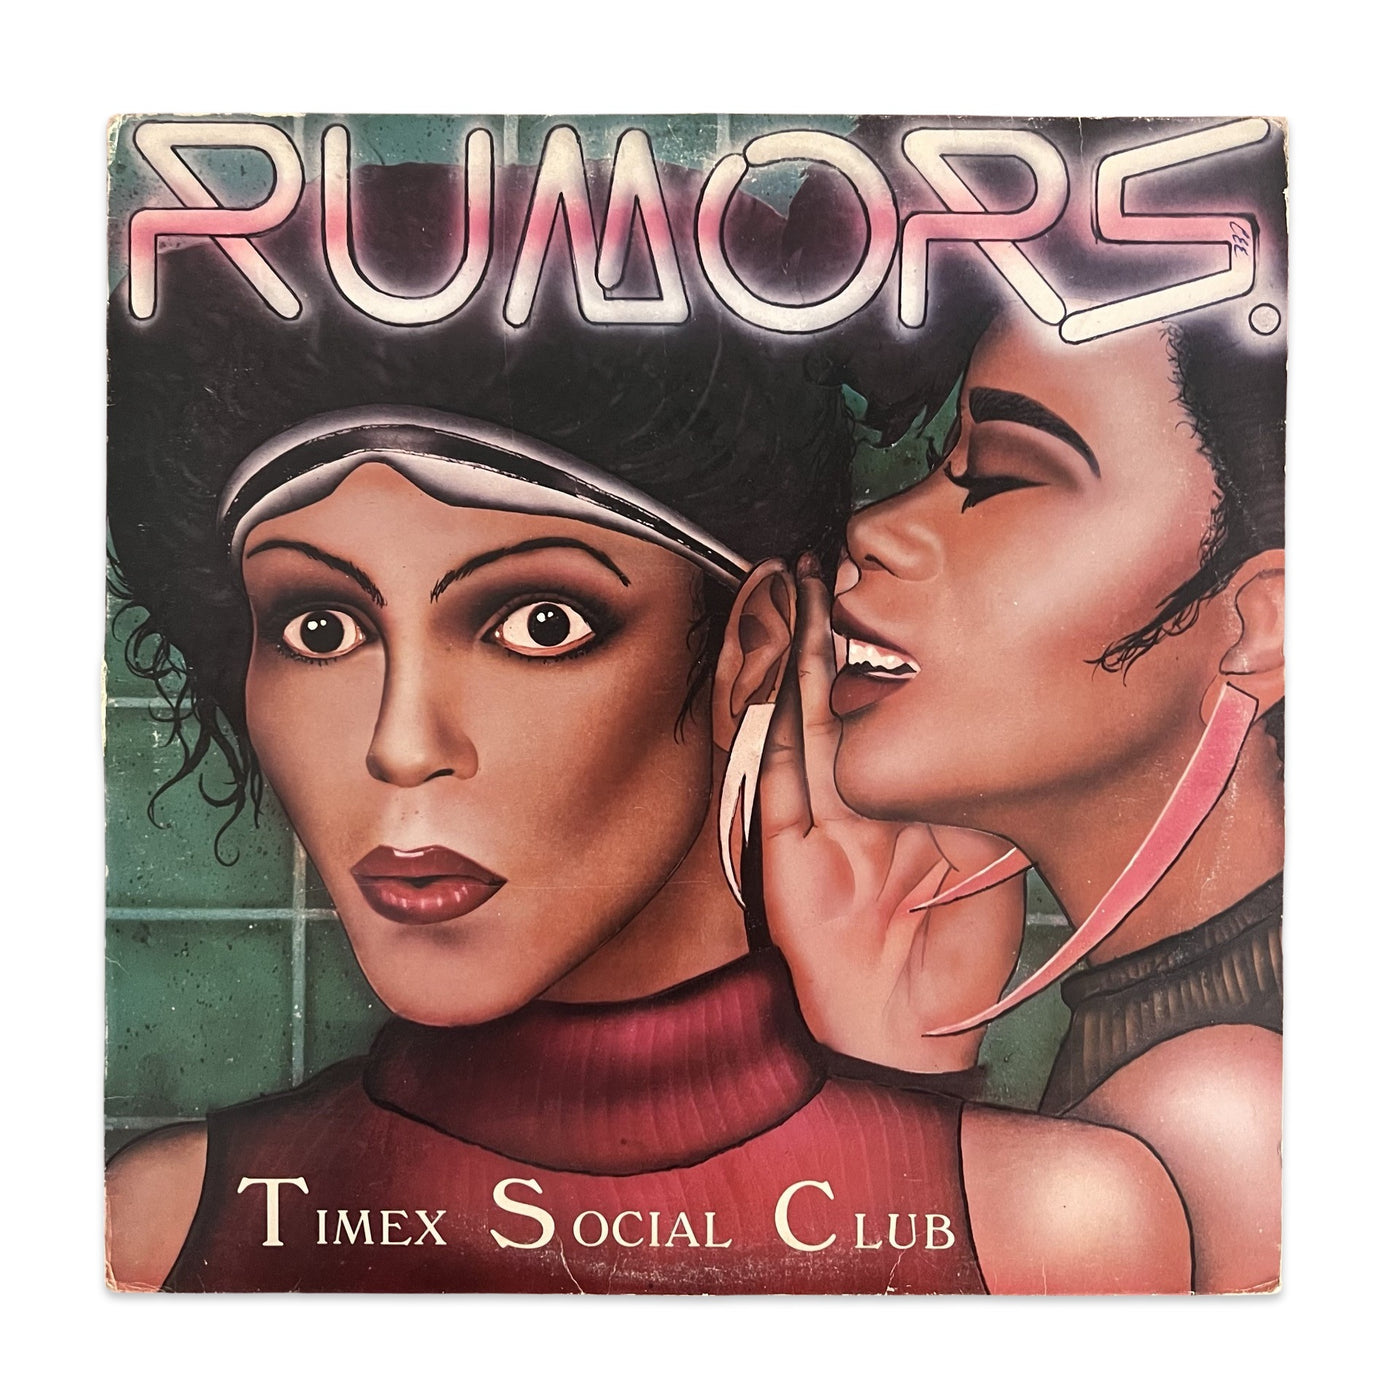 Timex Social Club – Rumors